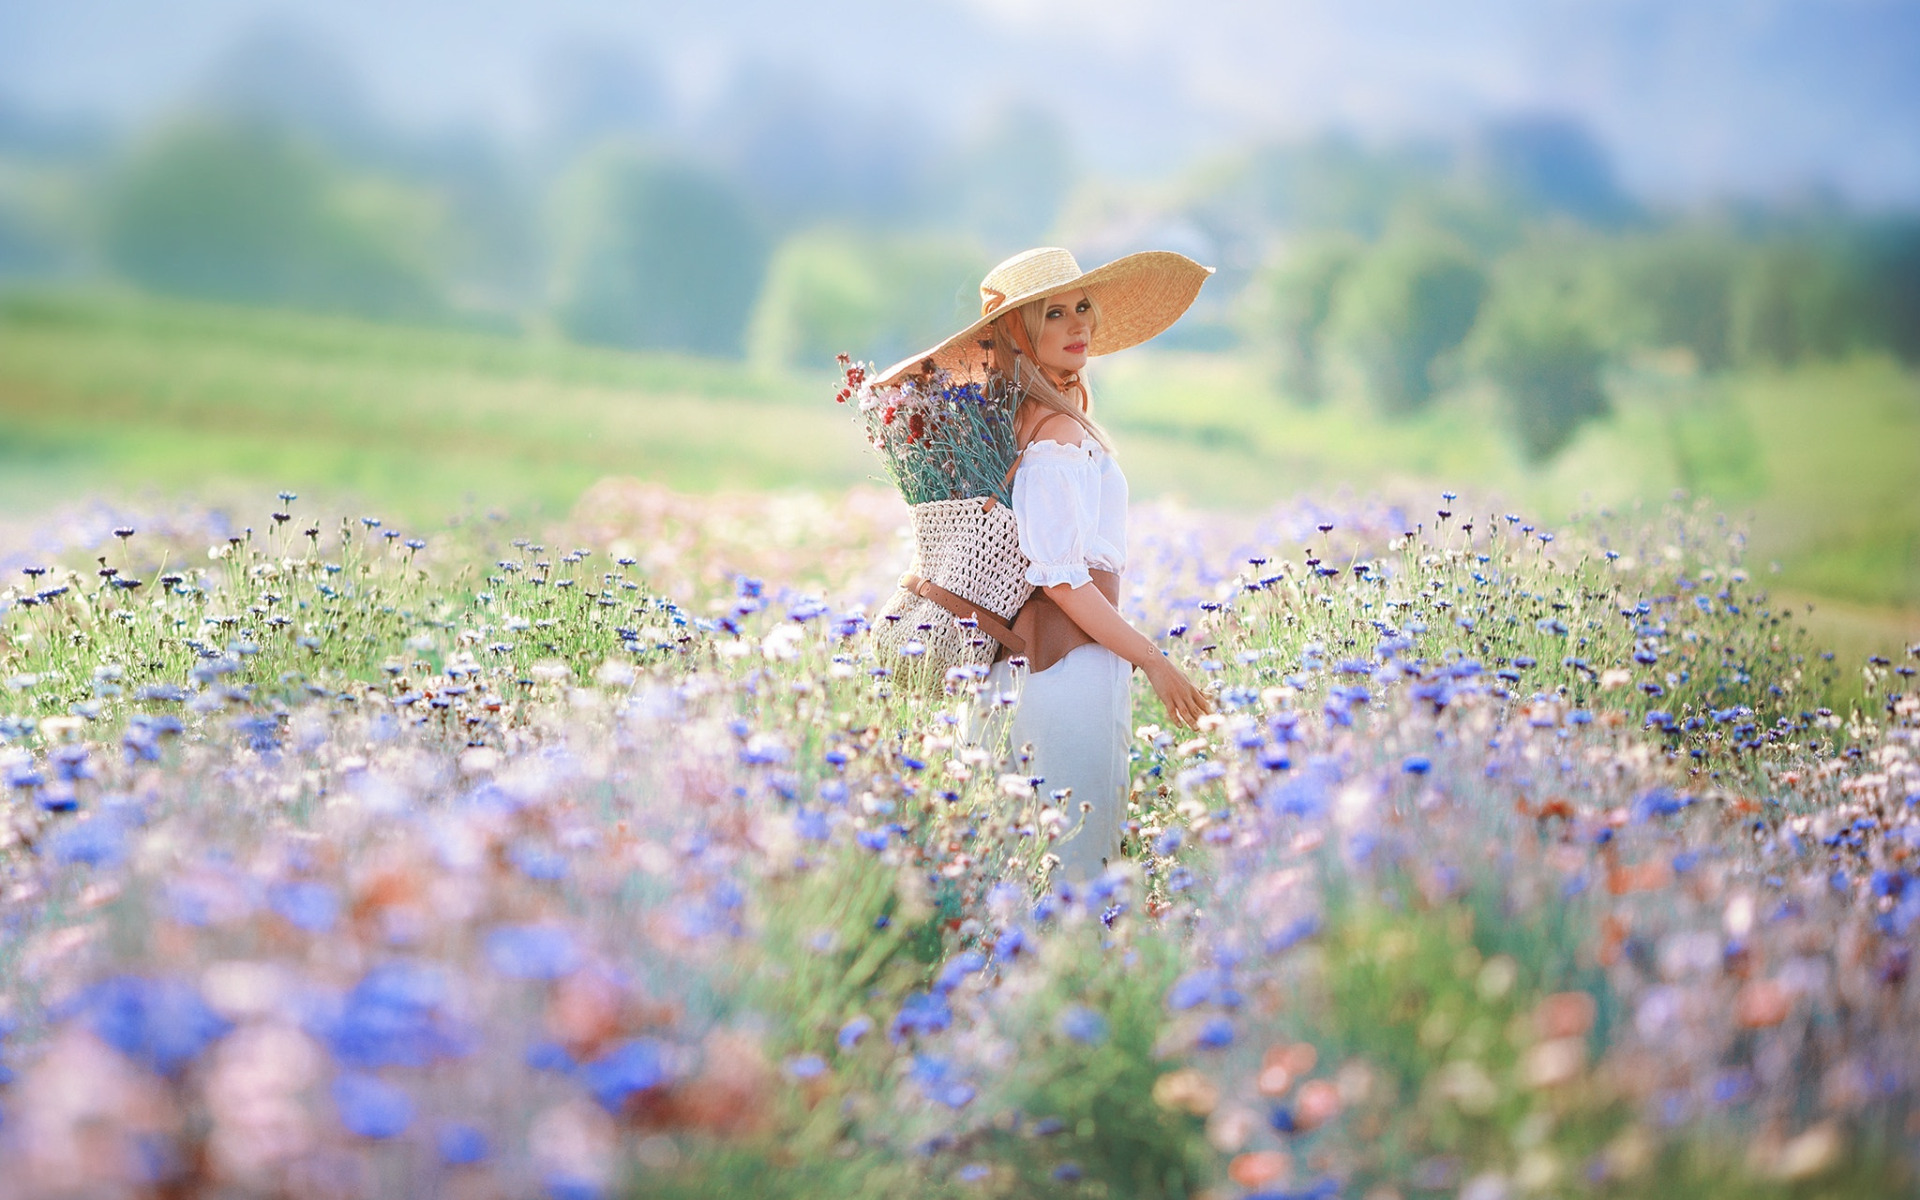 Лето было поздним. Девушка лето. Женщина с полевыми цветами. Девушка в цветочном поле в шляпке. Девушка в поле с цветами.